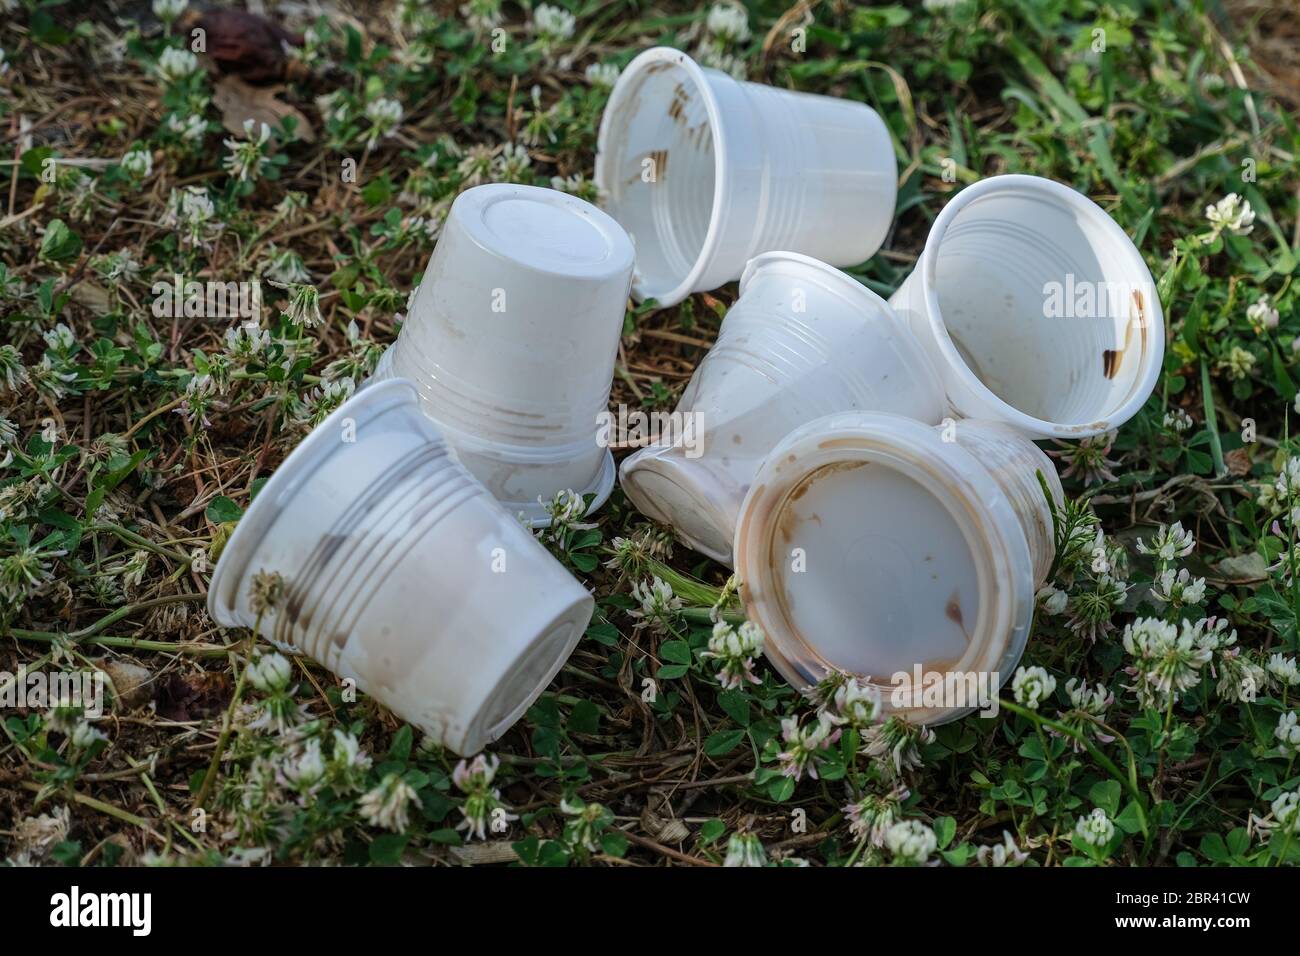 Saque el café de plástico usado los residuos de vidrio descargados, la contaminación sucia desechable Foto de stock